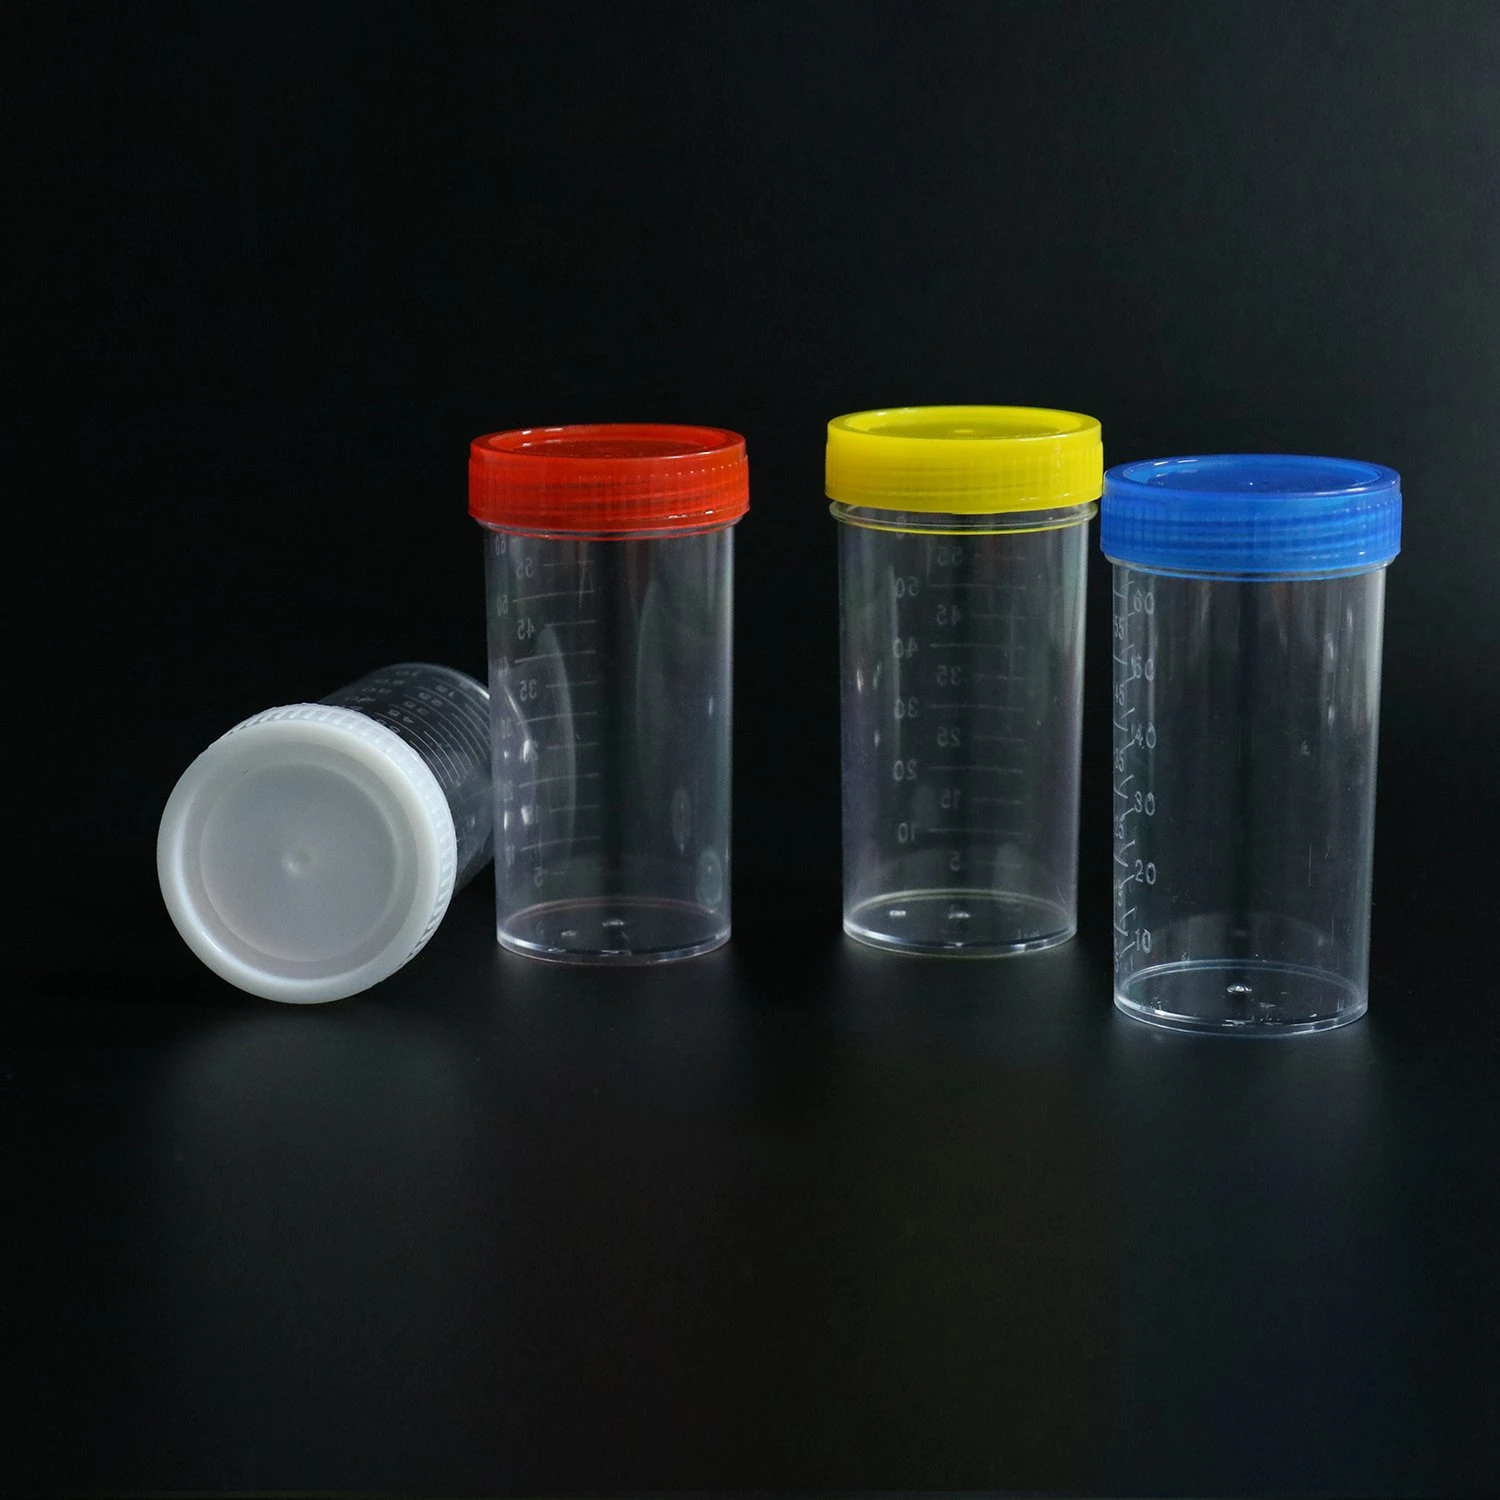 Coupe d'échantillon d'urine de 30 ml de conteneurs stériles